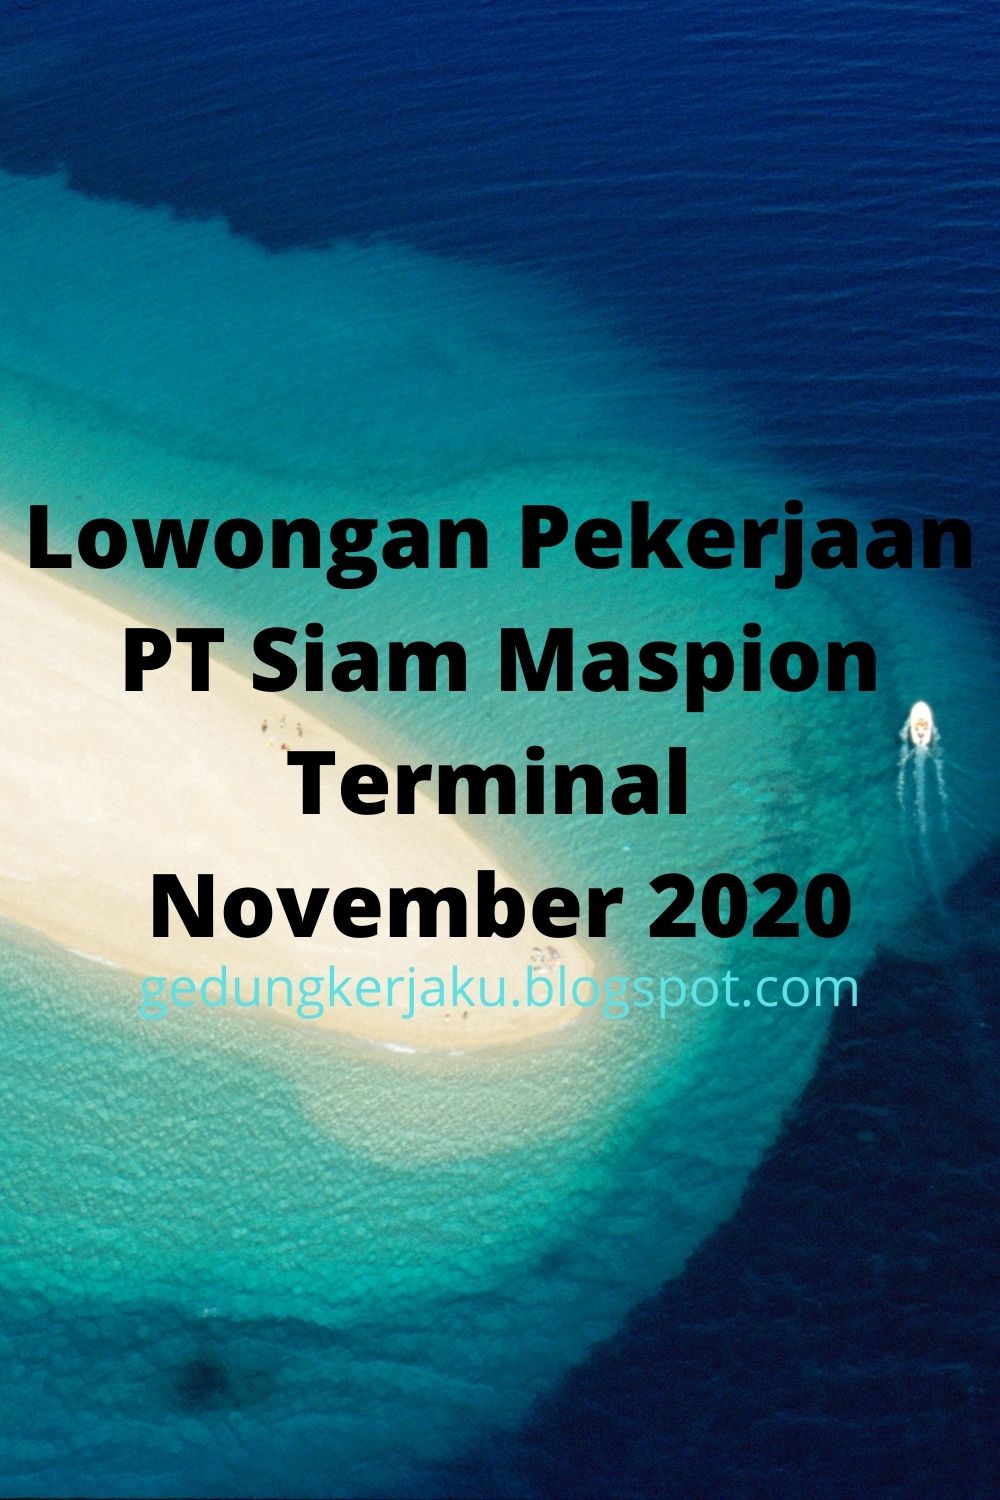 Lowongan Pekerjaan PT Siam Maspion Terminal November 2020